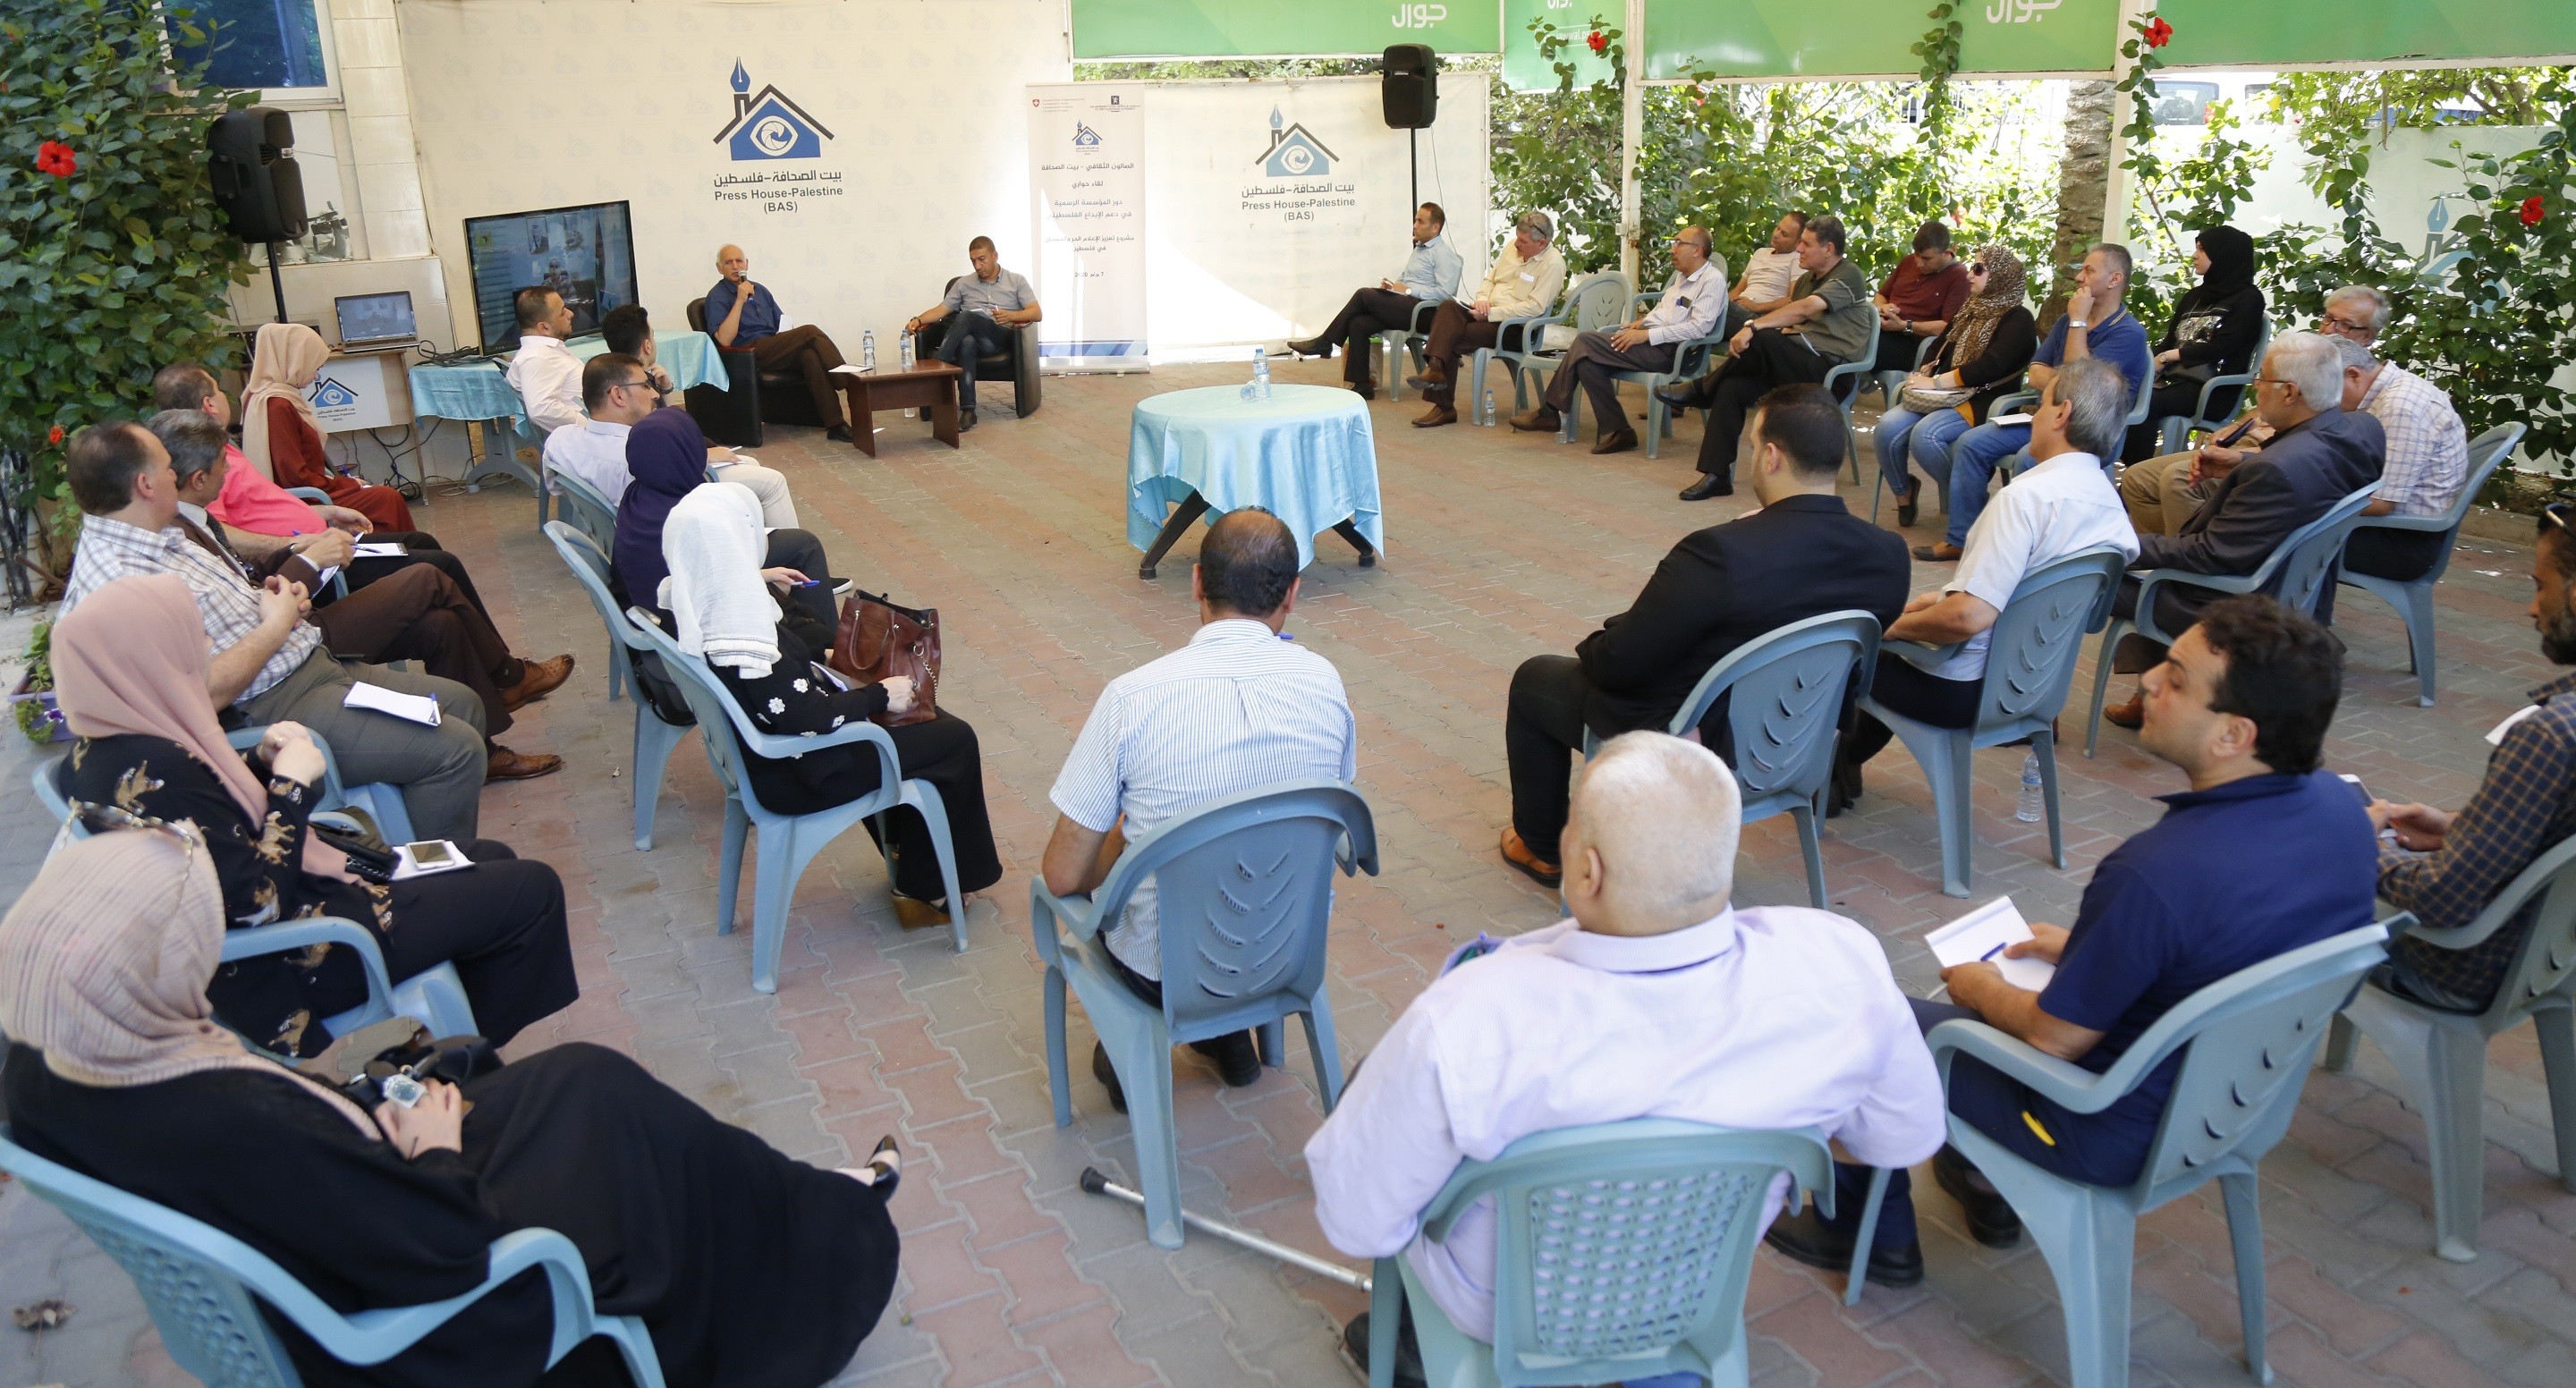 الصالون الثقافي في بيت الصحافة يعقد ندوة بعنوان "دور المؤسسة الرسمية في دعم الإبداع الفلسطيني"